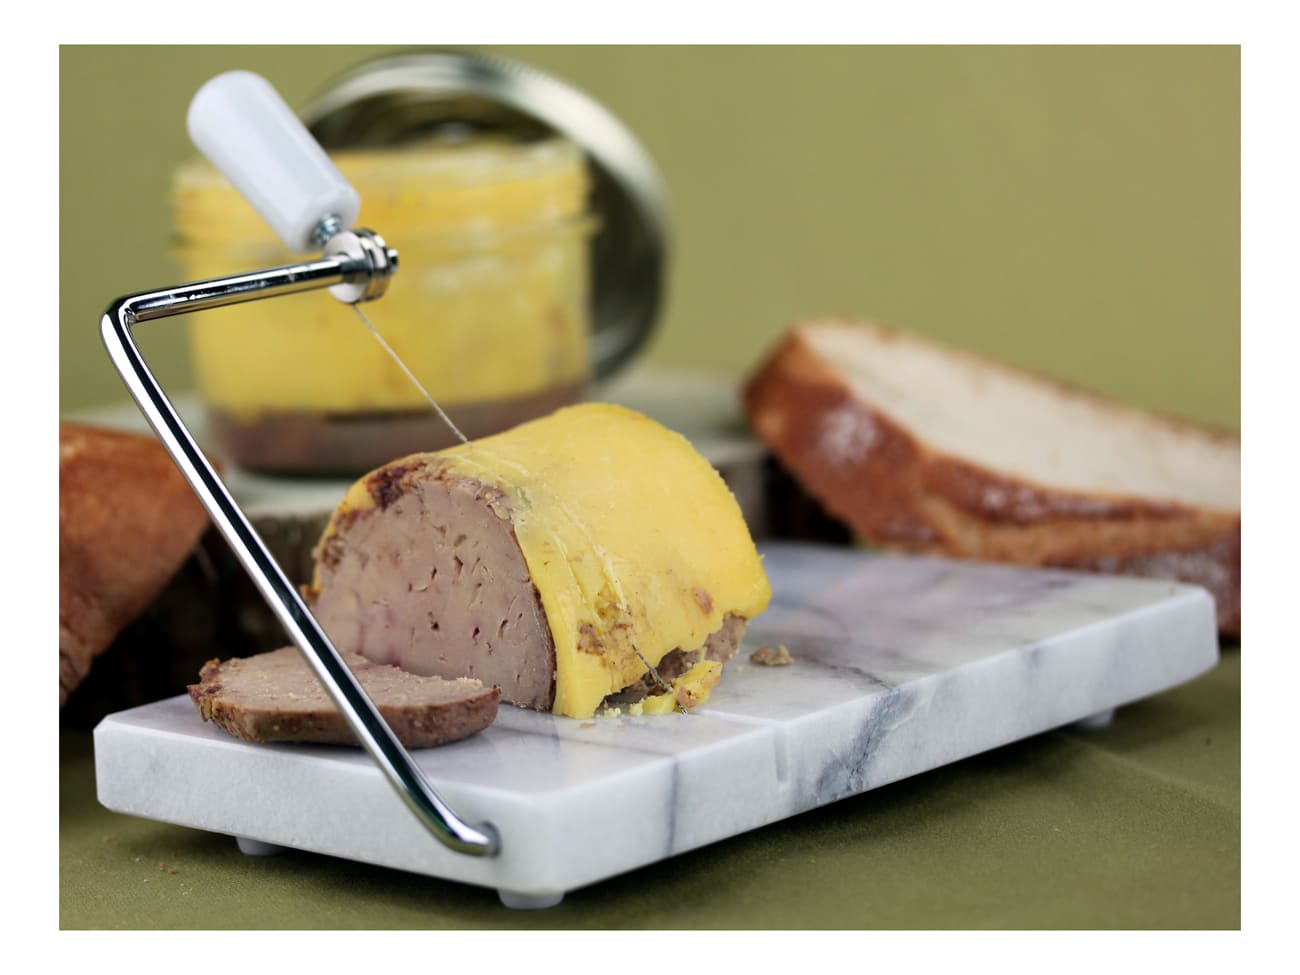 Lyre (coupe foie gras) simple